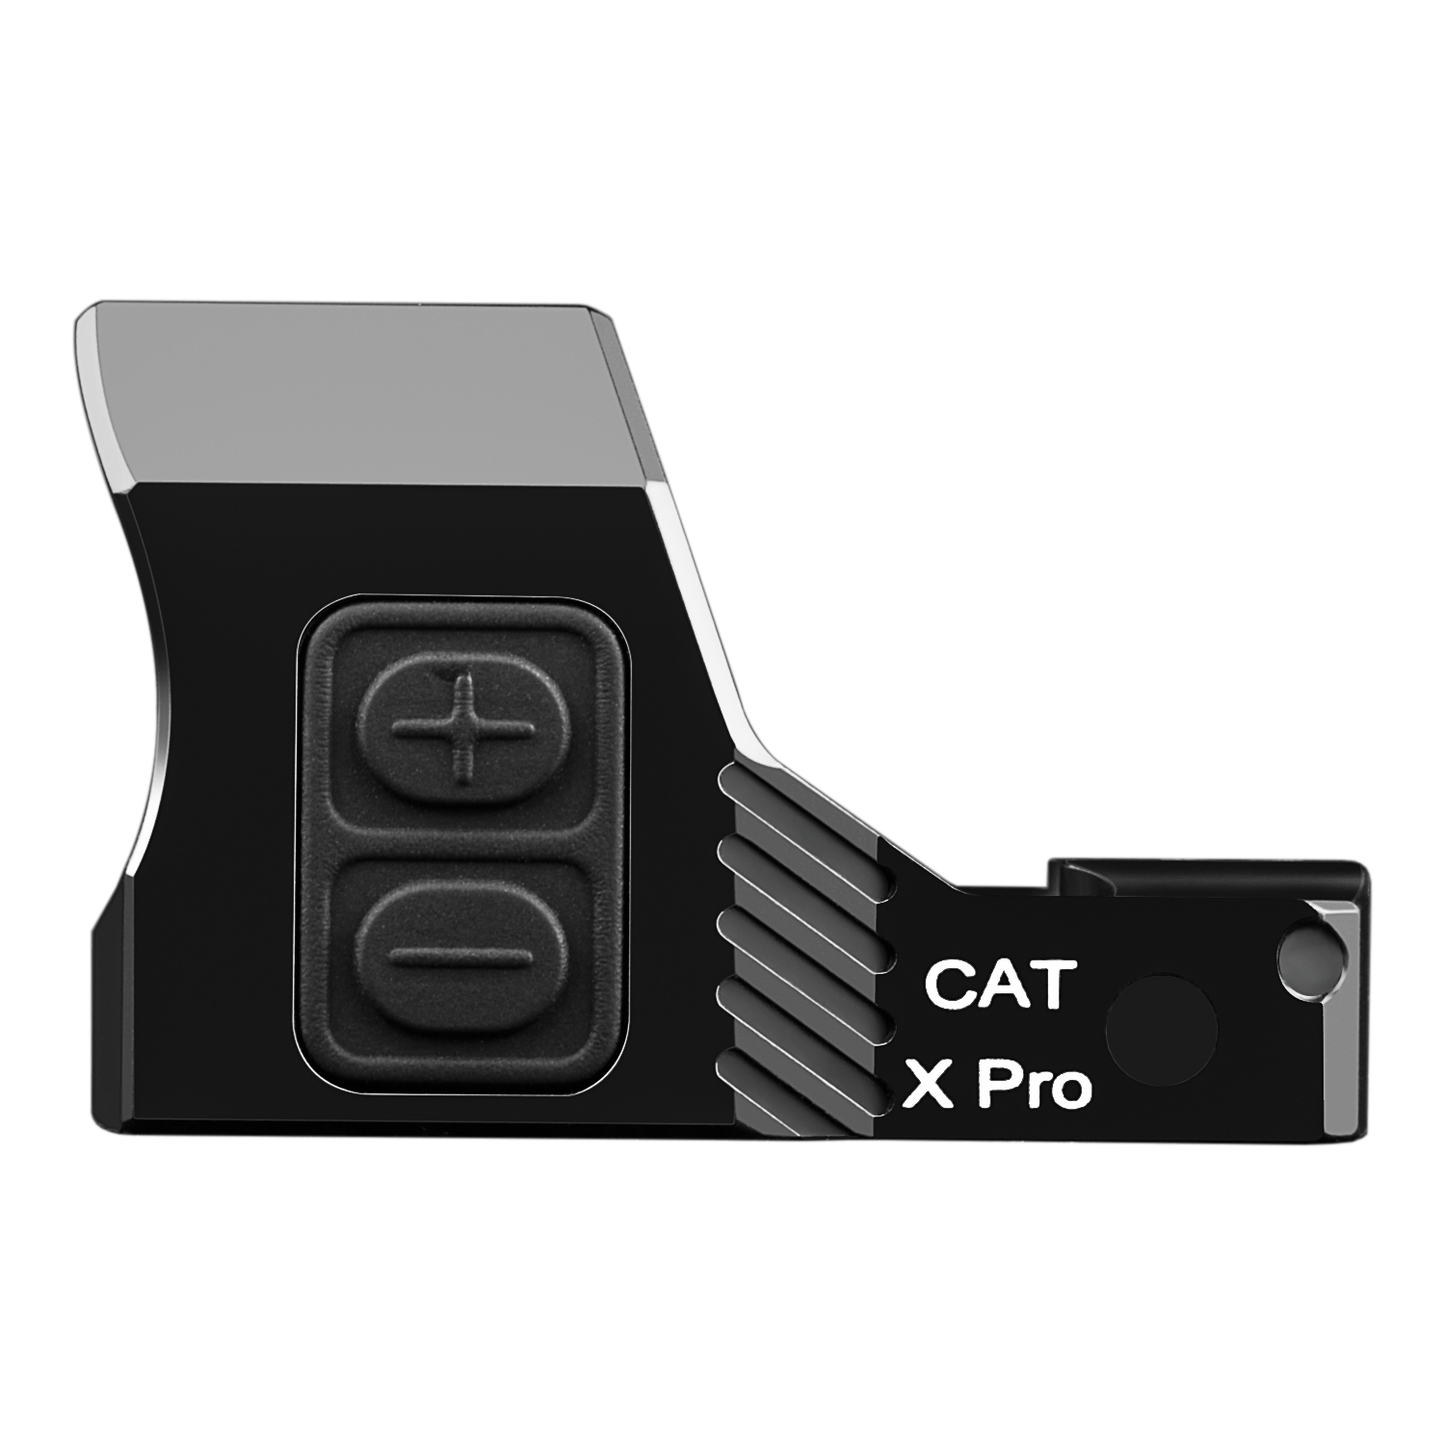 the cat x pro remote control unit